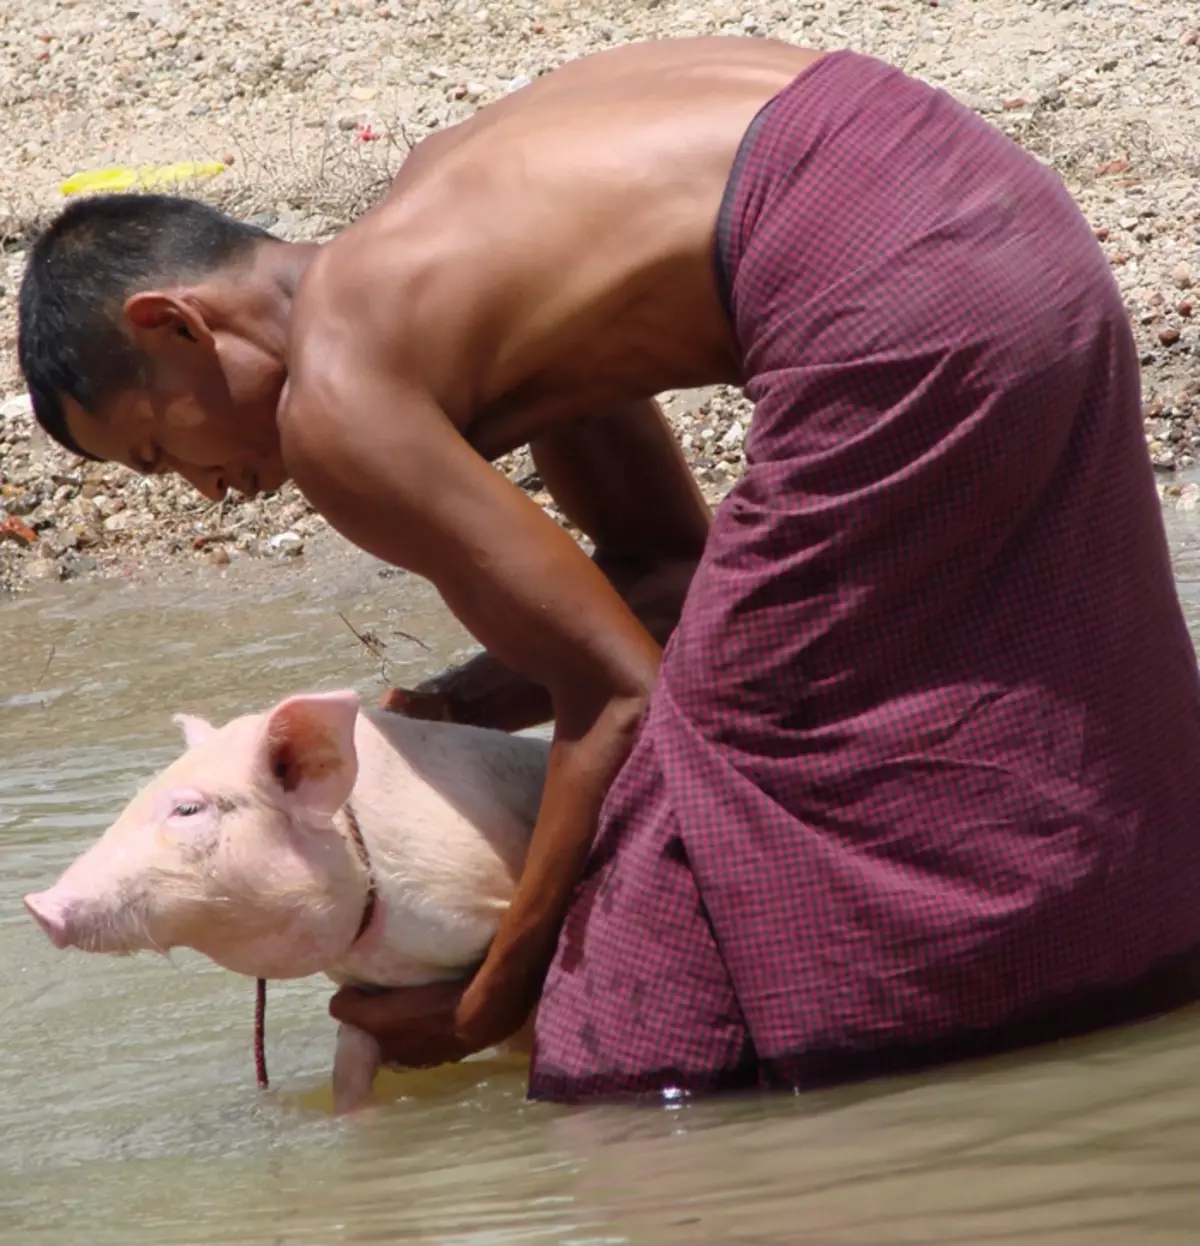 Sa Myanmar, ang mga lalaki ay nagsusuot ng mahabang skirts - Paso.